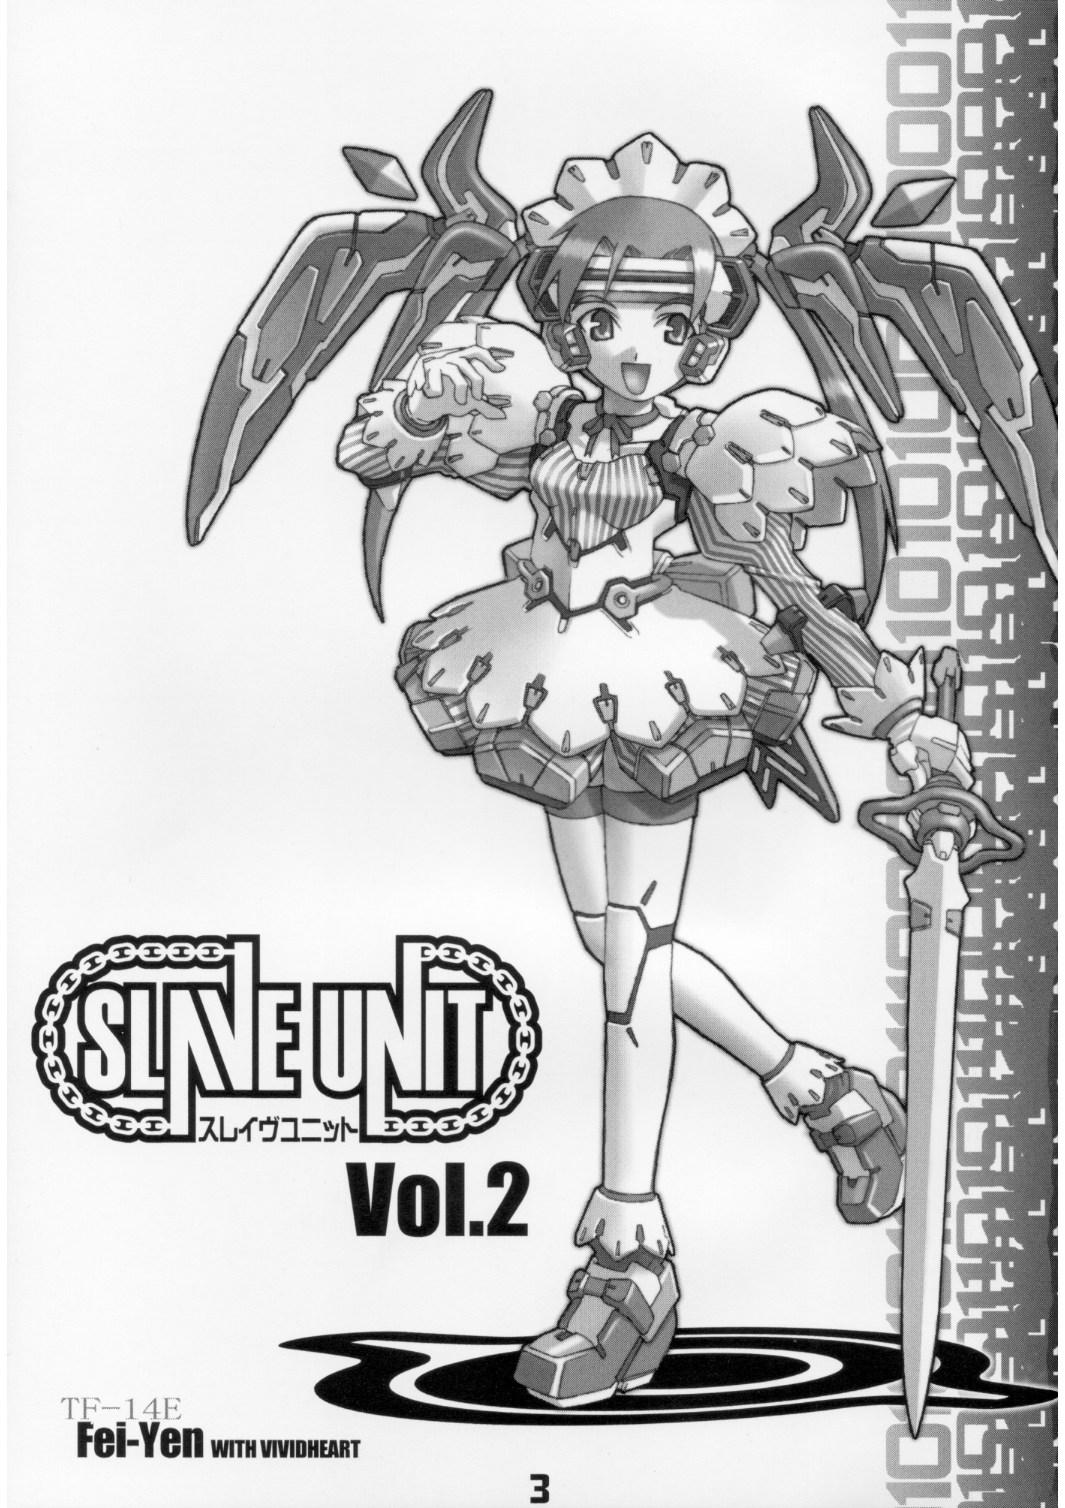 Spy Slave Unit Vol.2 - Dead or alive Darkstalkers Sakura taisen Devil may cry Excel saga Sesso - Page 2